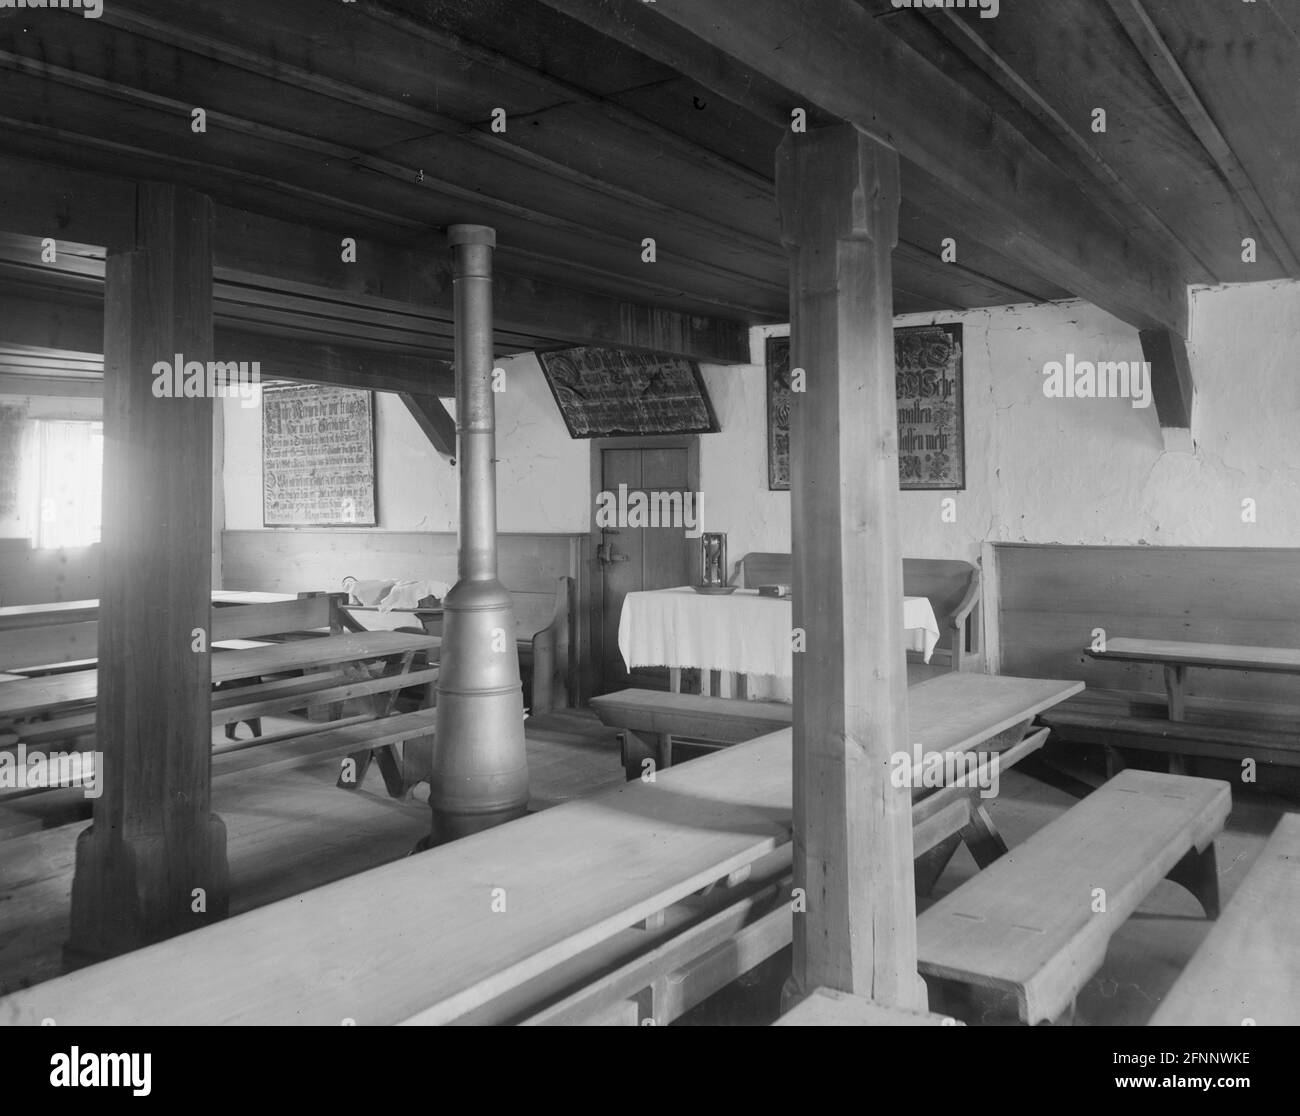 Ephrata Chiostro, vista interna dell'edificio che mostra sala riunioni o sala riunioni con frakturs appesi alle pareti, circa 1890 Foto Stock